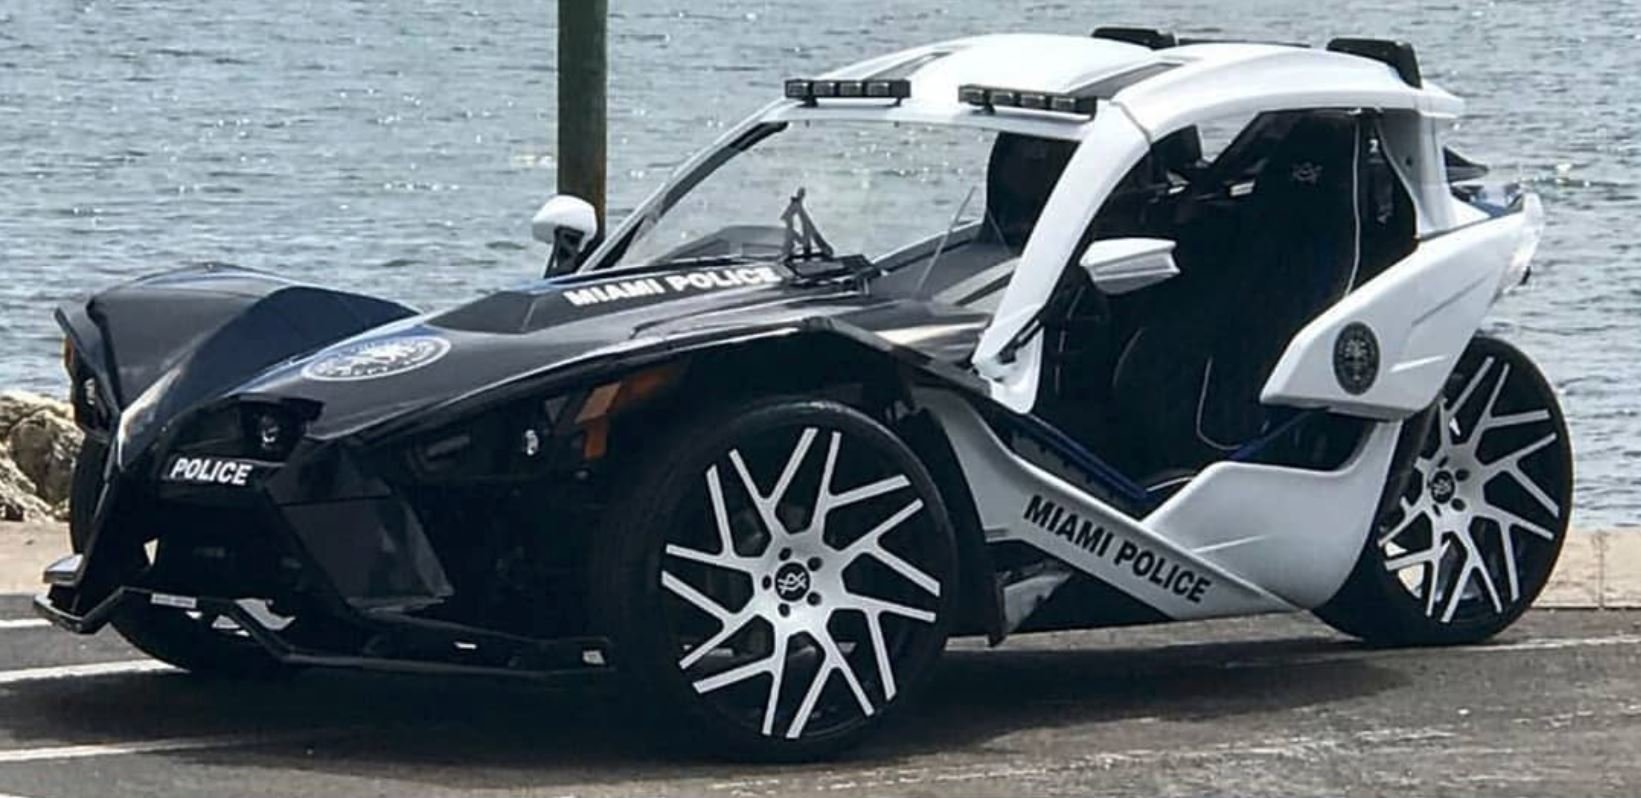 Policejní oddělení Miami South Beach dostalo velice neobvyklý služební stroj: Polaris Slingshot